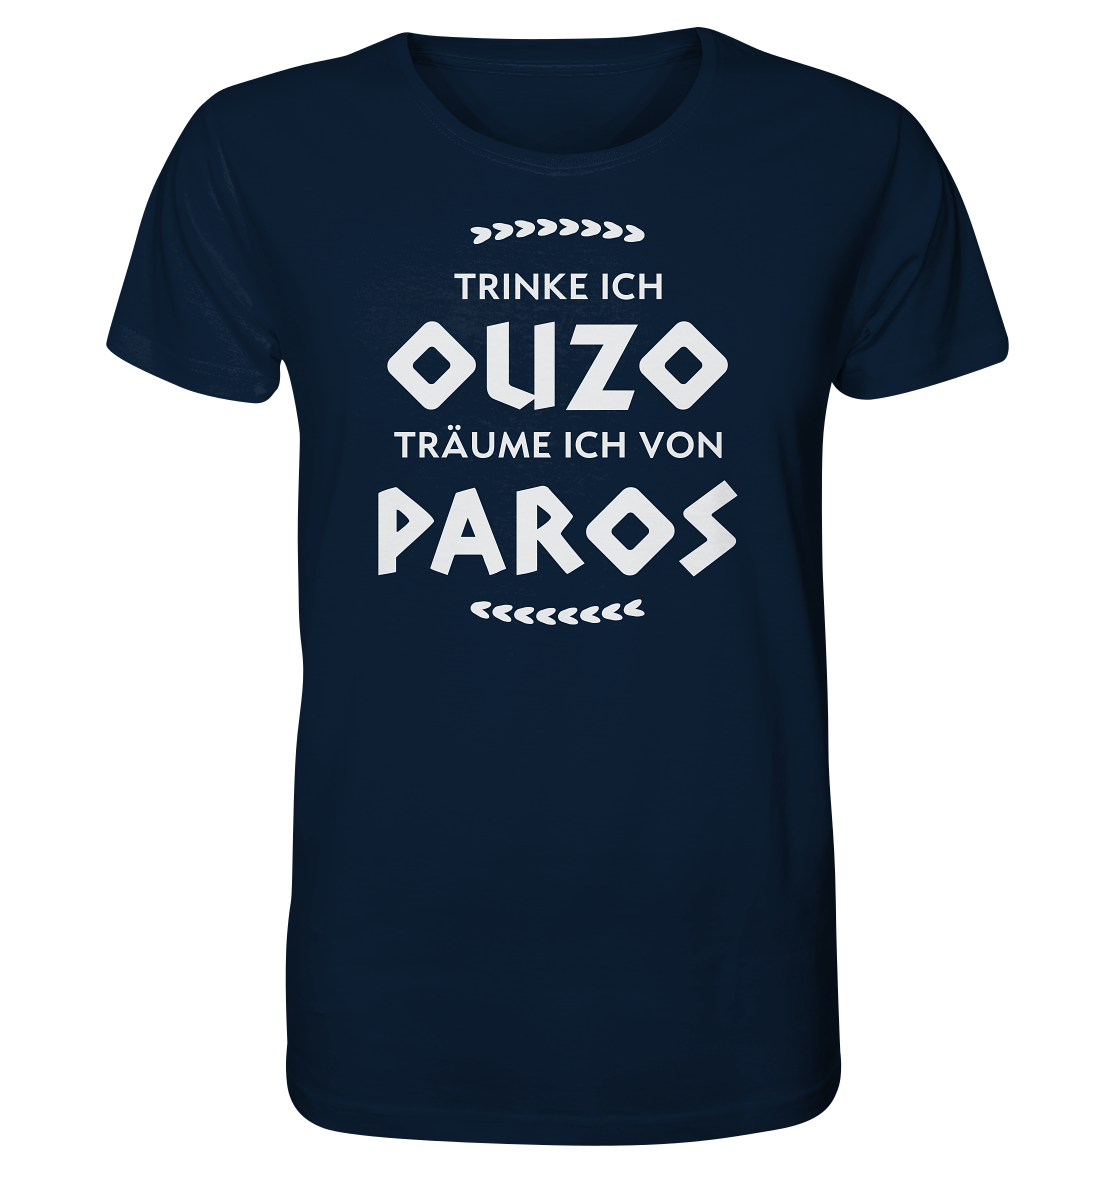 Trinke ich Ouzo träume ich von Paros - Organic Shirt